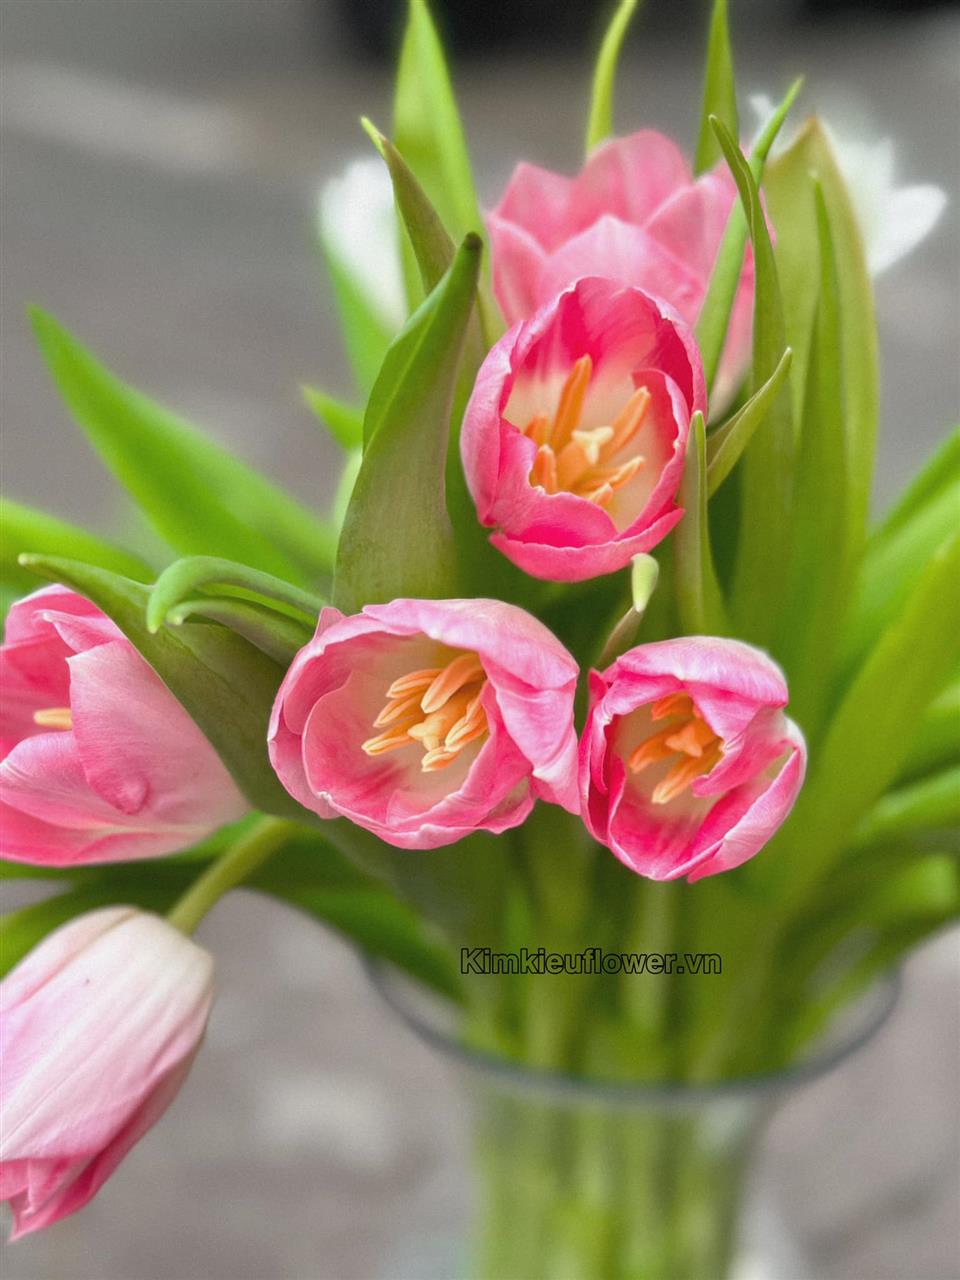 Hoa cưới tulip hồng - mang vẻ đẹp nhẹ nhàng, nữ tính; biểu tượng cho sự may mắn và cuộc hôn nhân viên mãn